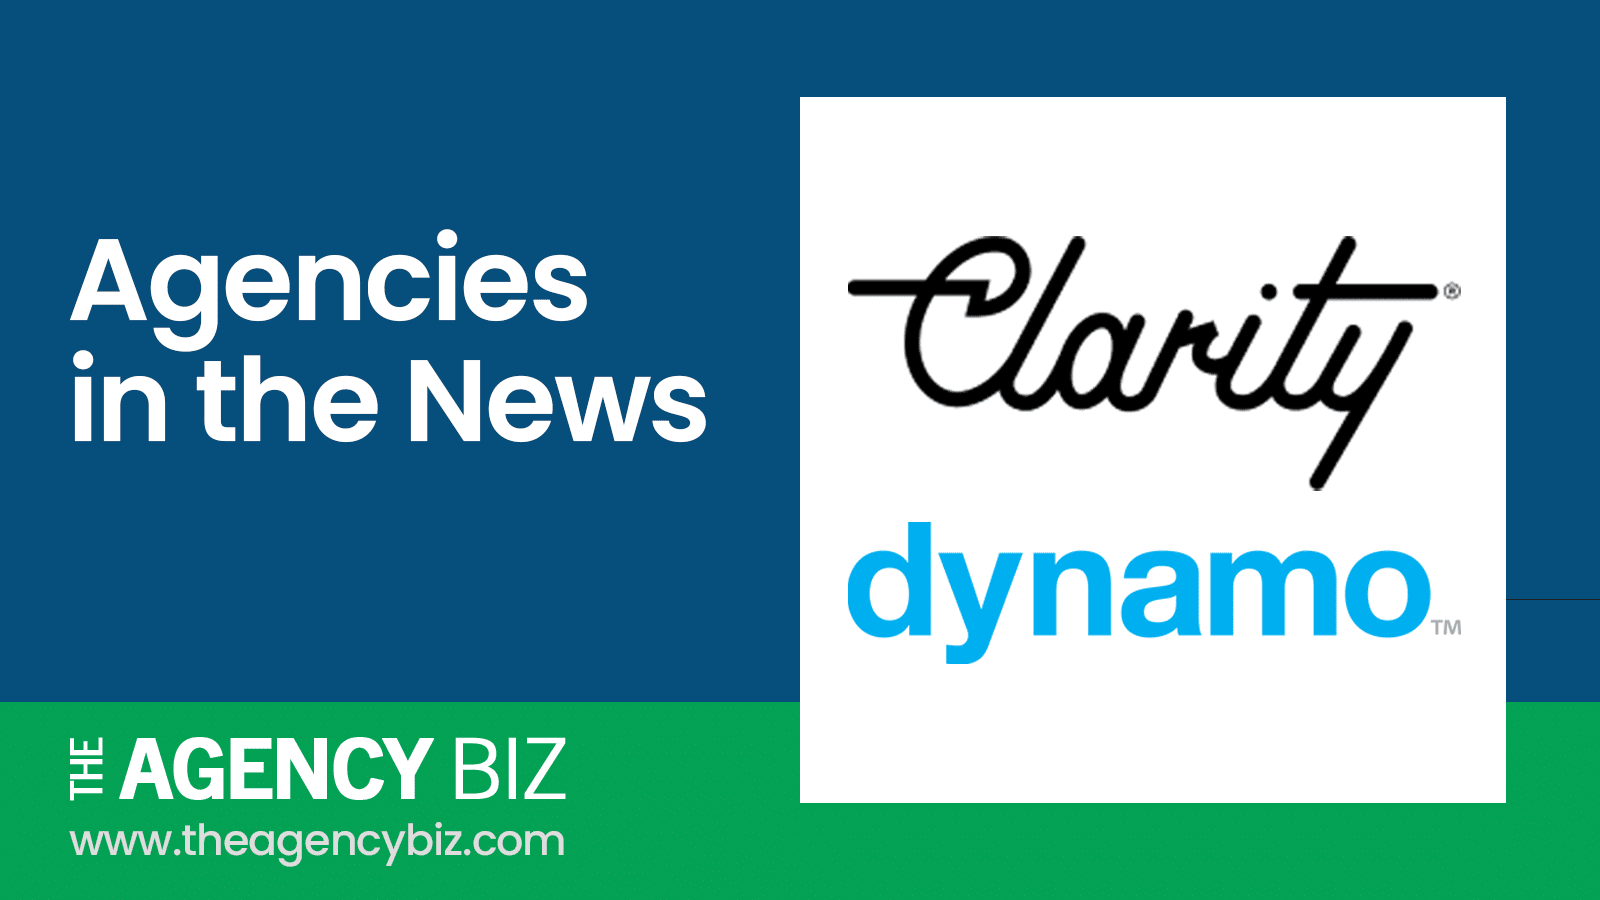 Clarity acquires Dynamo PR